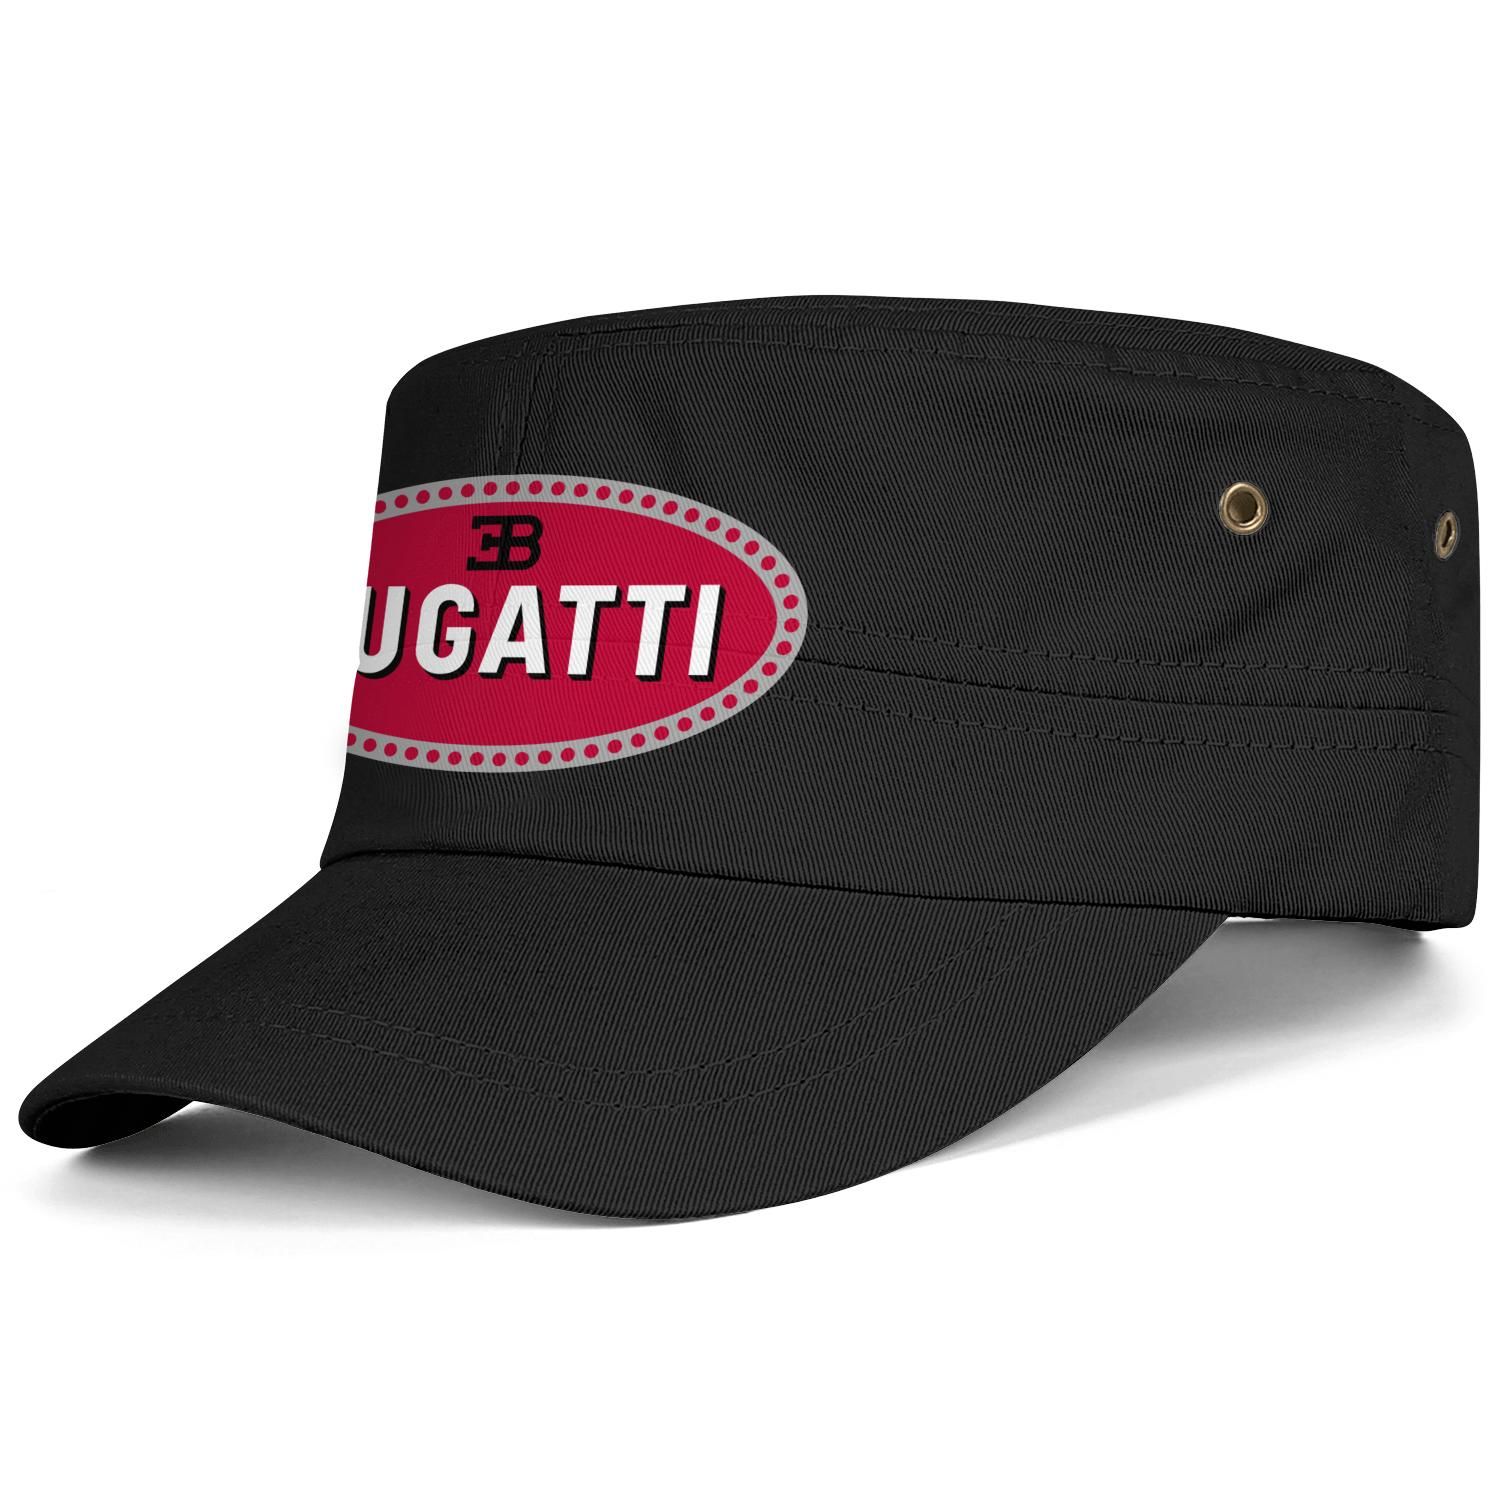 claridad Generoso orquesta Bugatti Car Logo Negro Mujeres Hombres Sombrero Gorra Tenis Verano  Sombreros De 12,85 € | DHgate